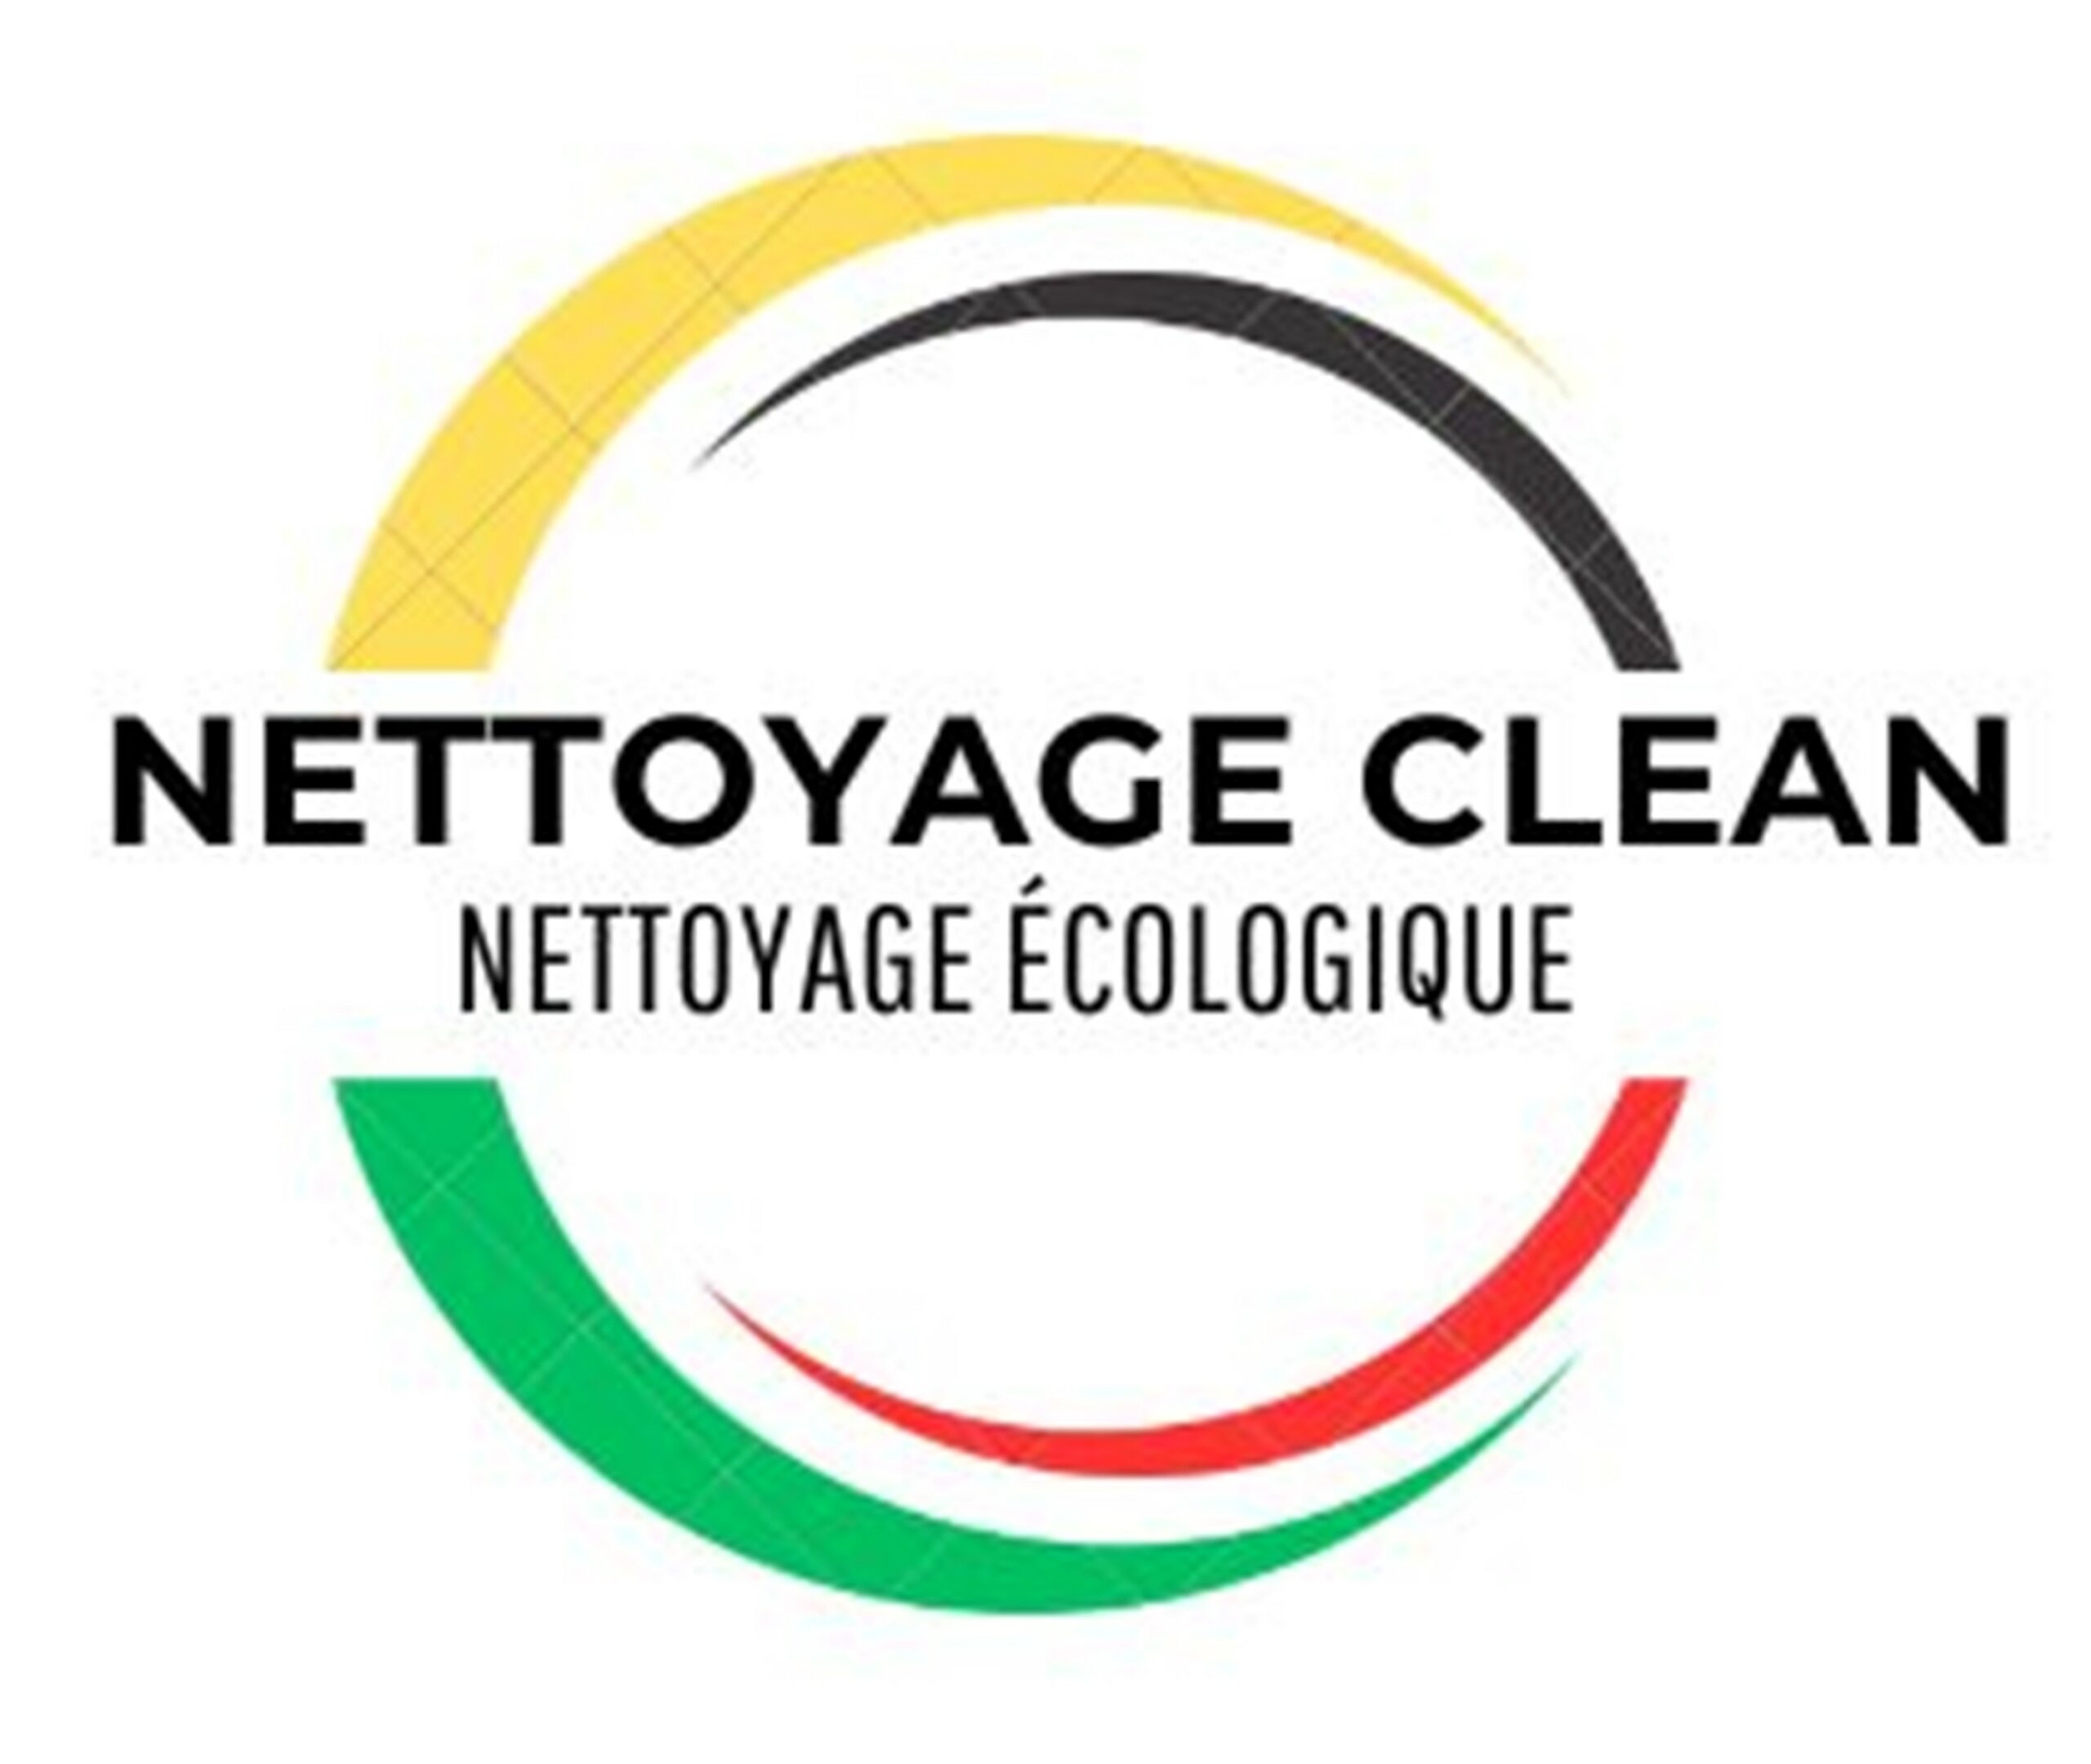 Nettoyage clean à Toulouse